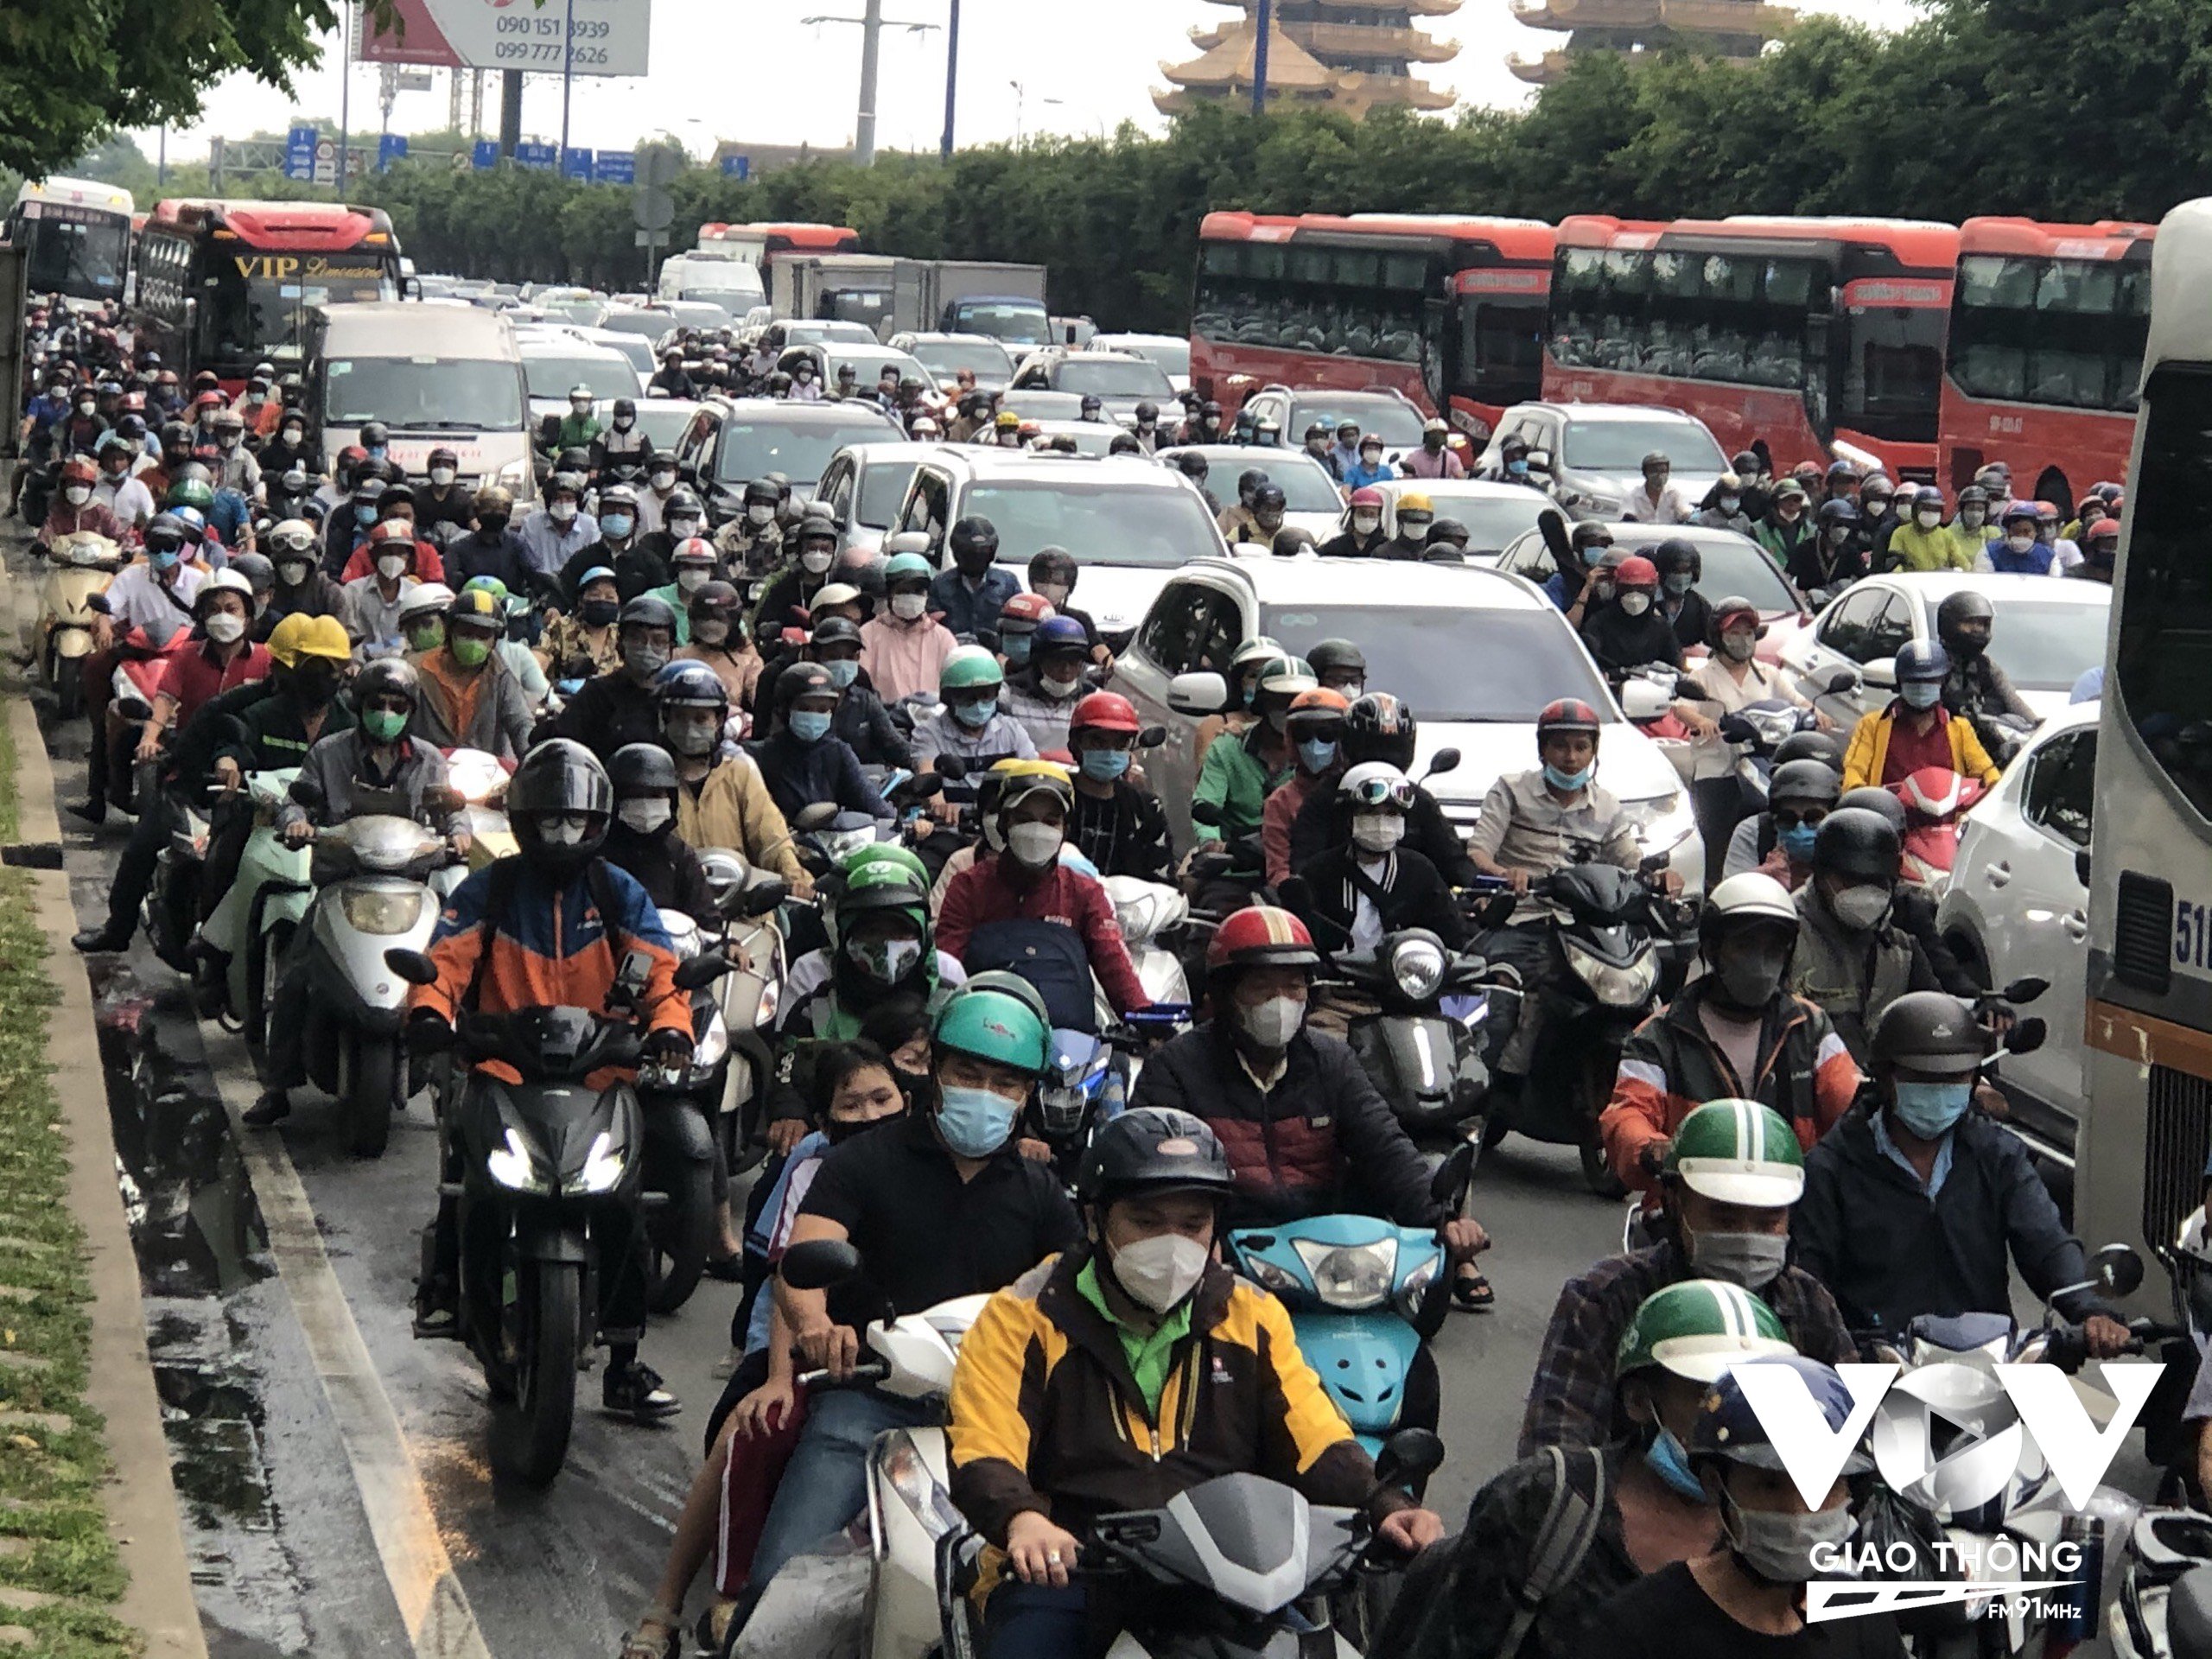 Tại cửa ngõ phía Đông cũng đông không kém, trên xa lộ Hà Nội hàng ngàn phương tiện nối đuôi nhau theo hướng vào đường Mai Chí Thọ (TP. Thủ Đức) để di chuyển lên cao tốc TP.HCM - Long Thành - Dầu Giây.